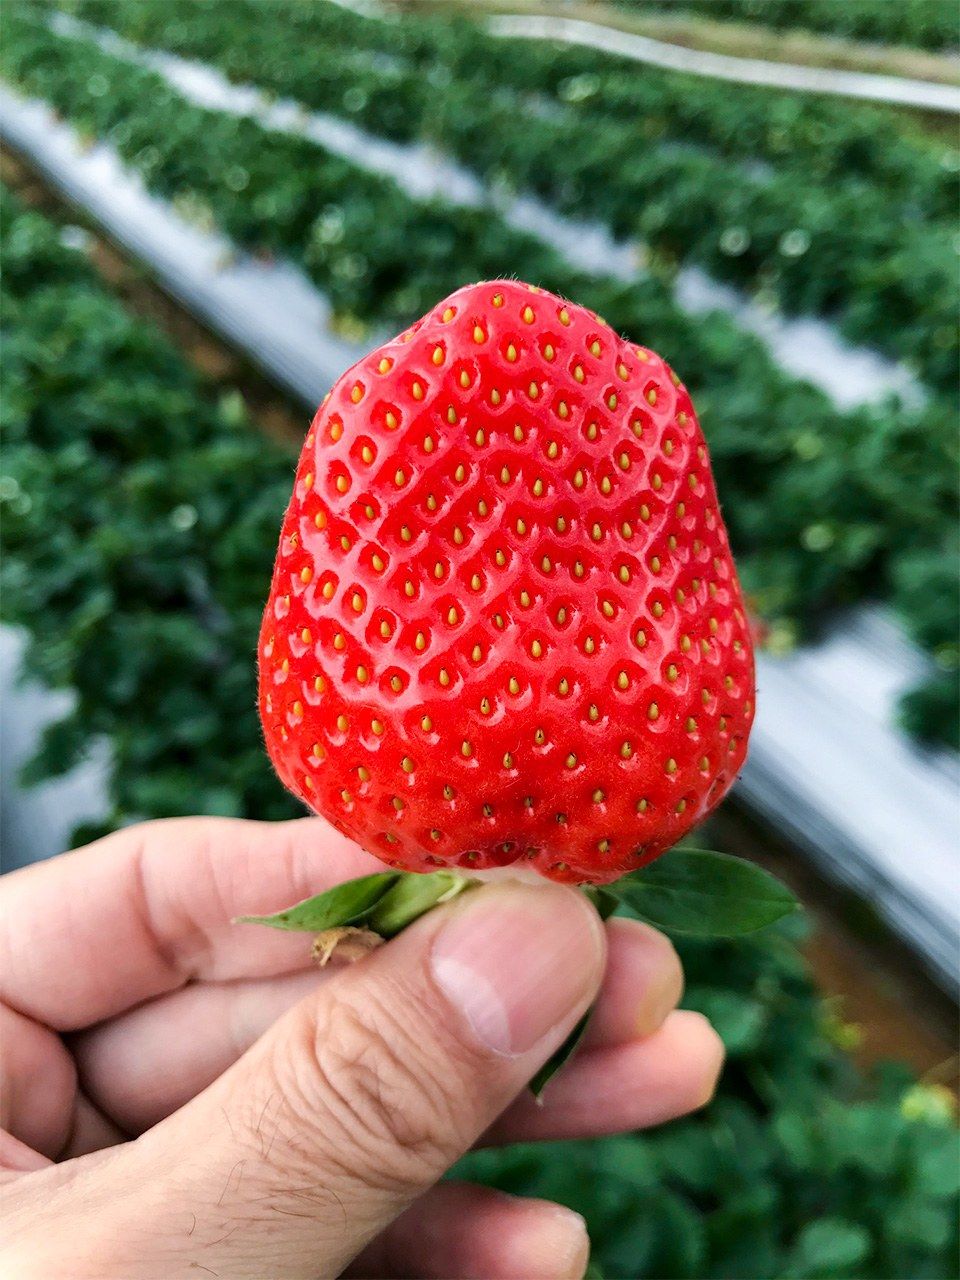 周美琴女士栽培的大湖草莓